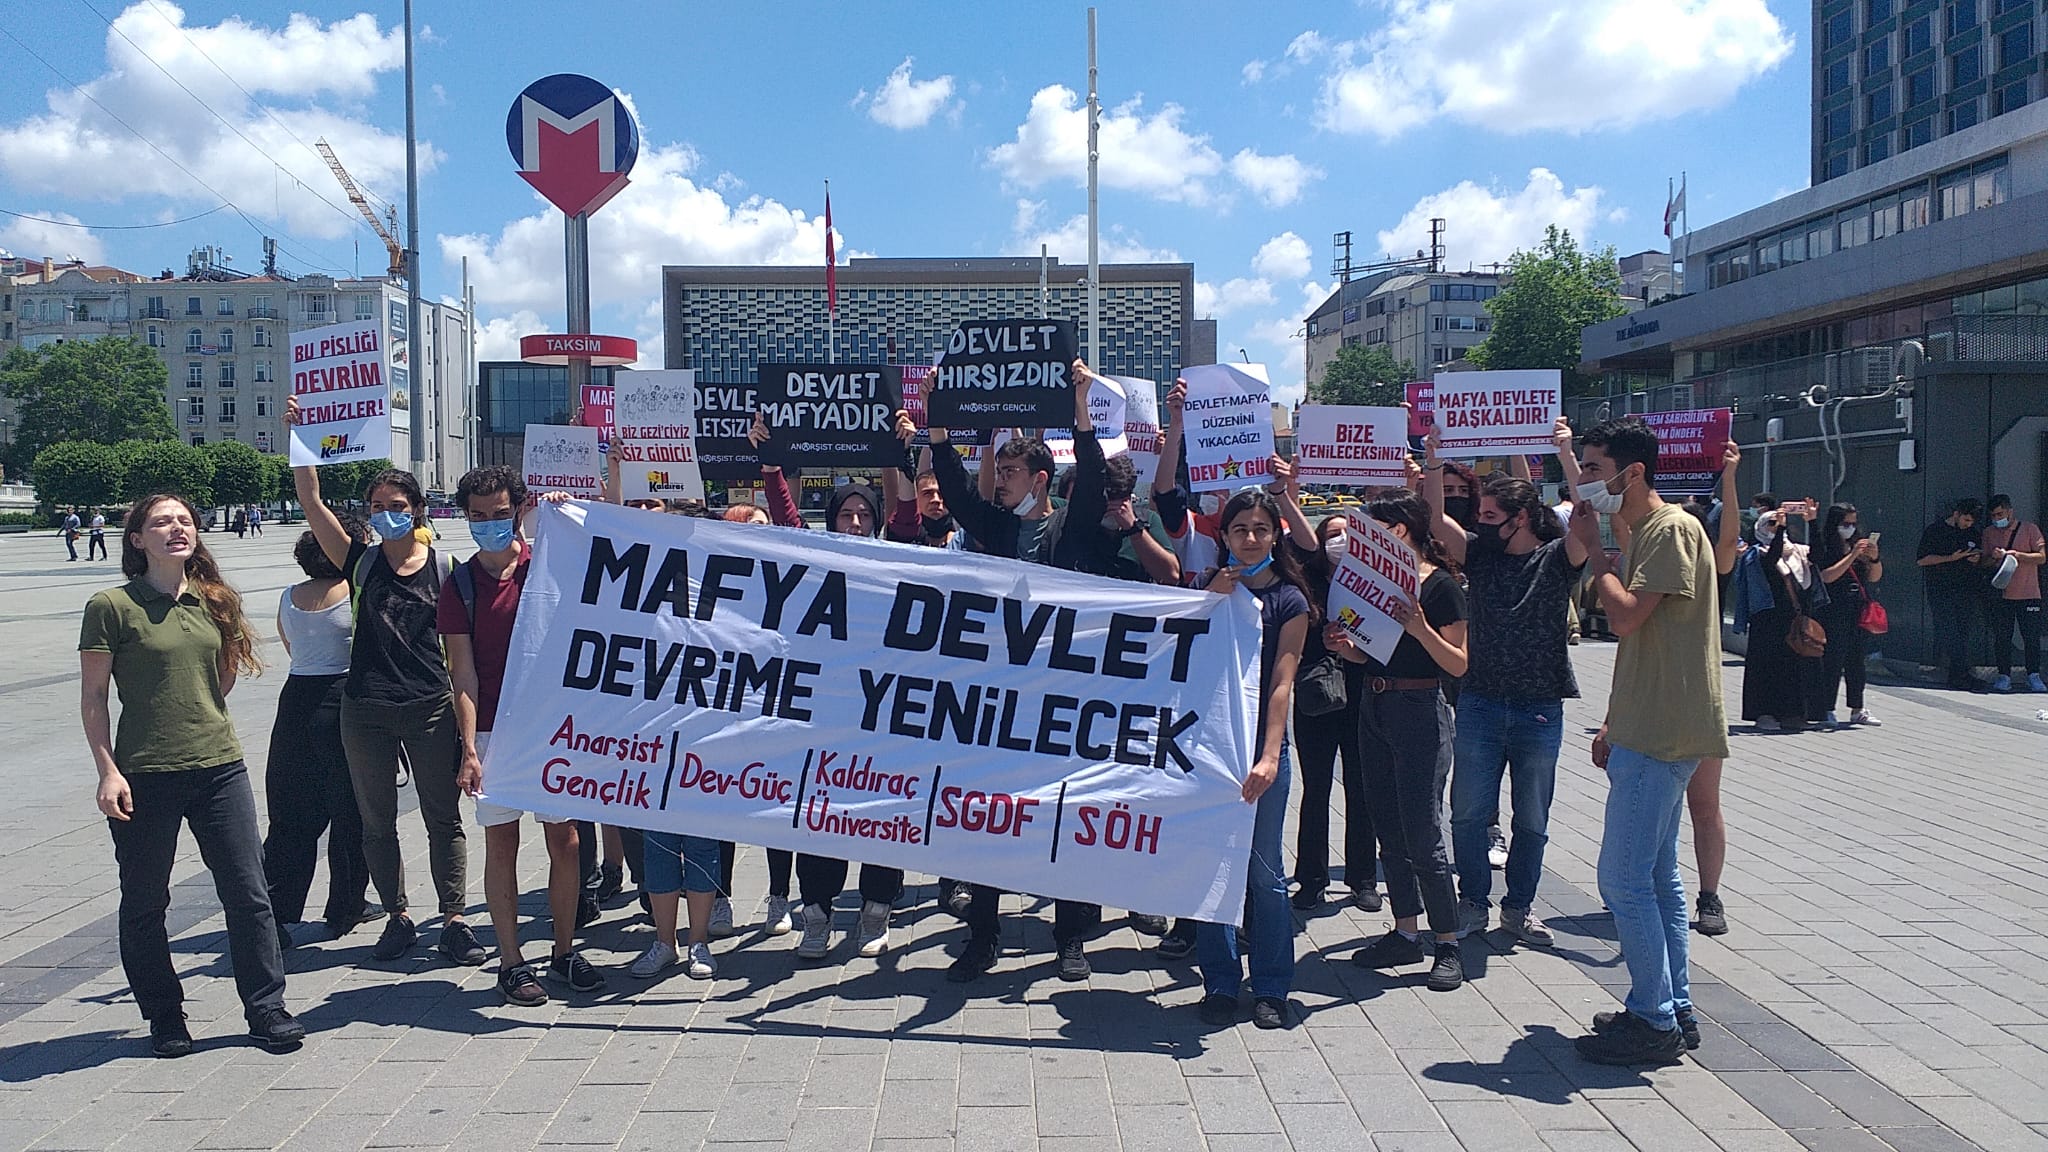 Gençlik örgütlerinin Taksim’de “Mafya devlet devrime yenilecek” sloganıyla gerçekleştirdiği eyleme polis saldırdı